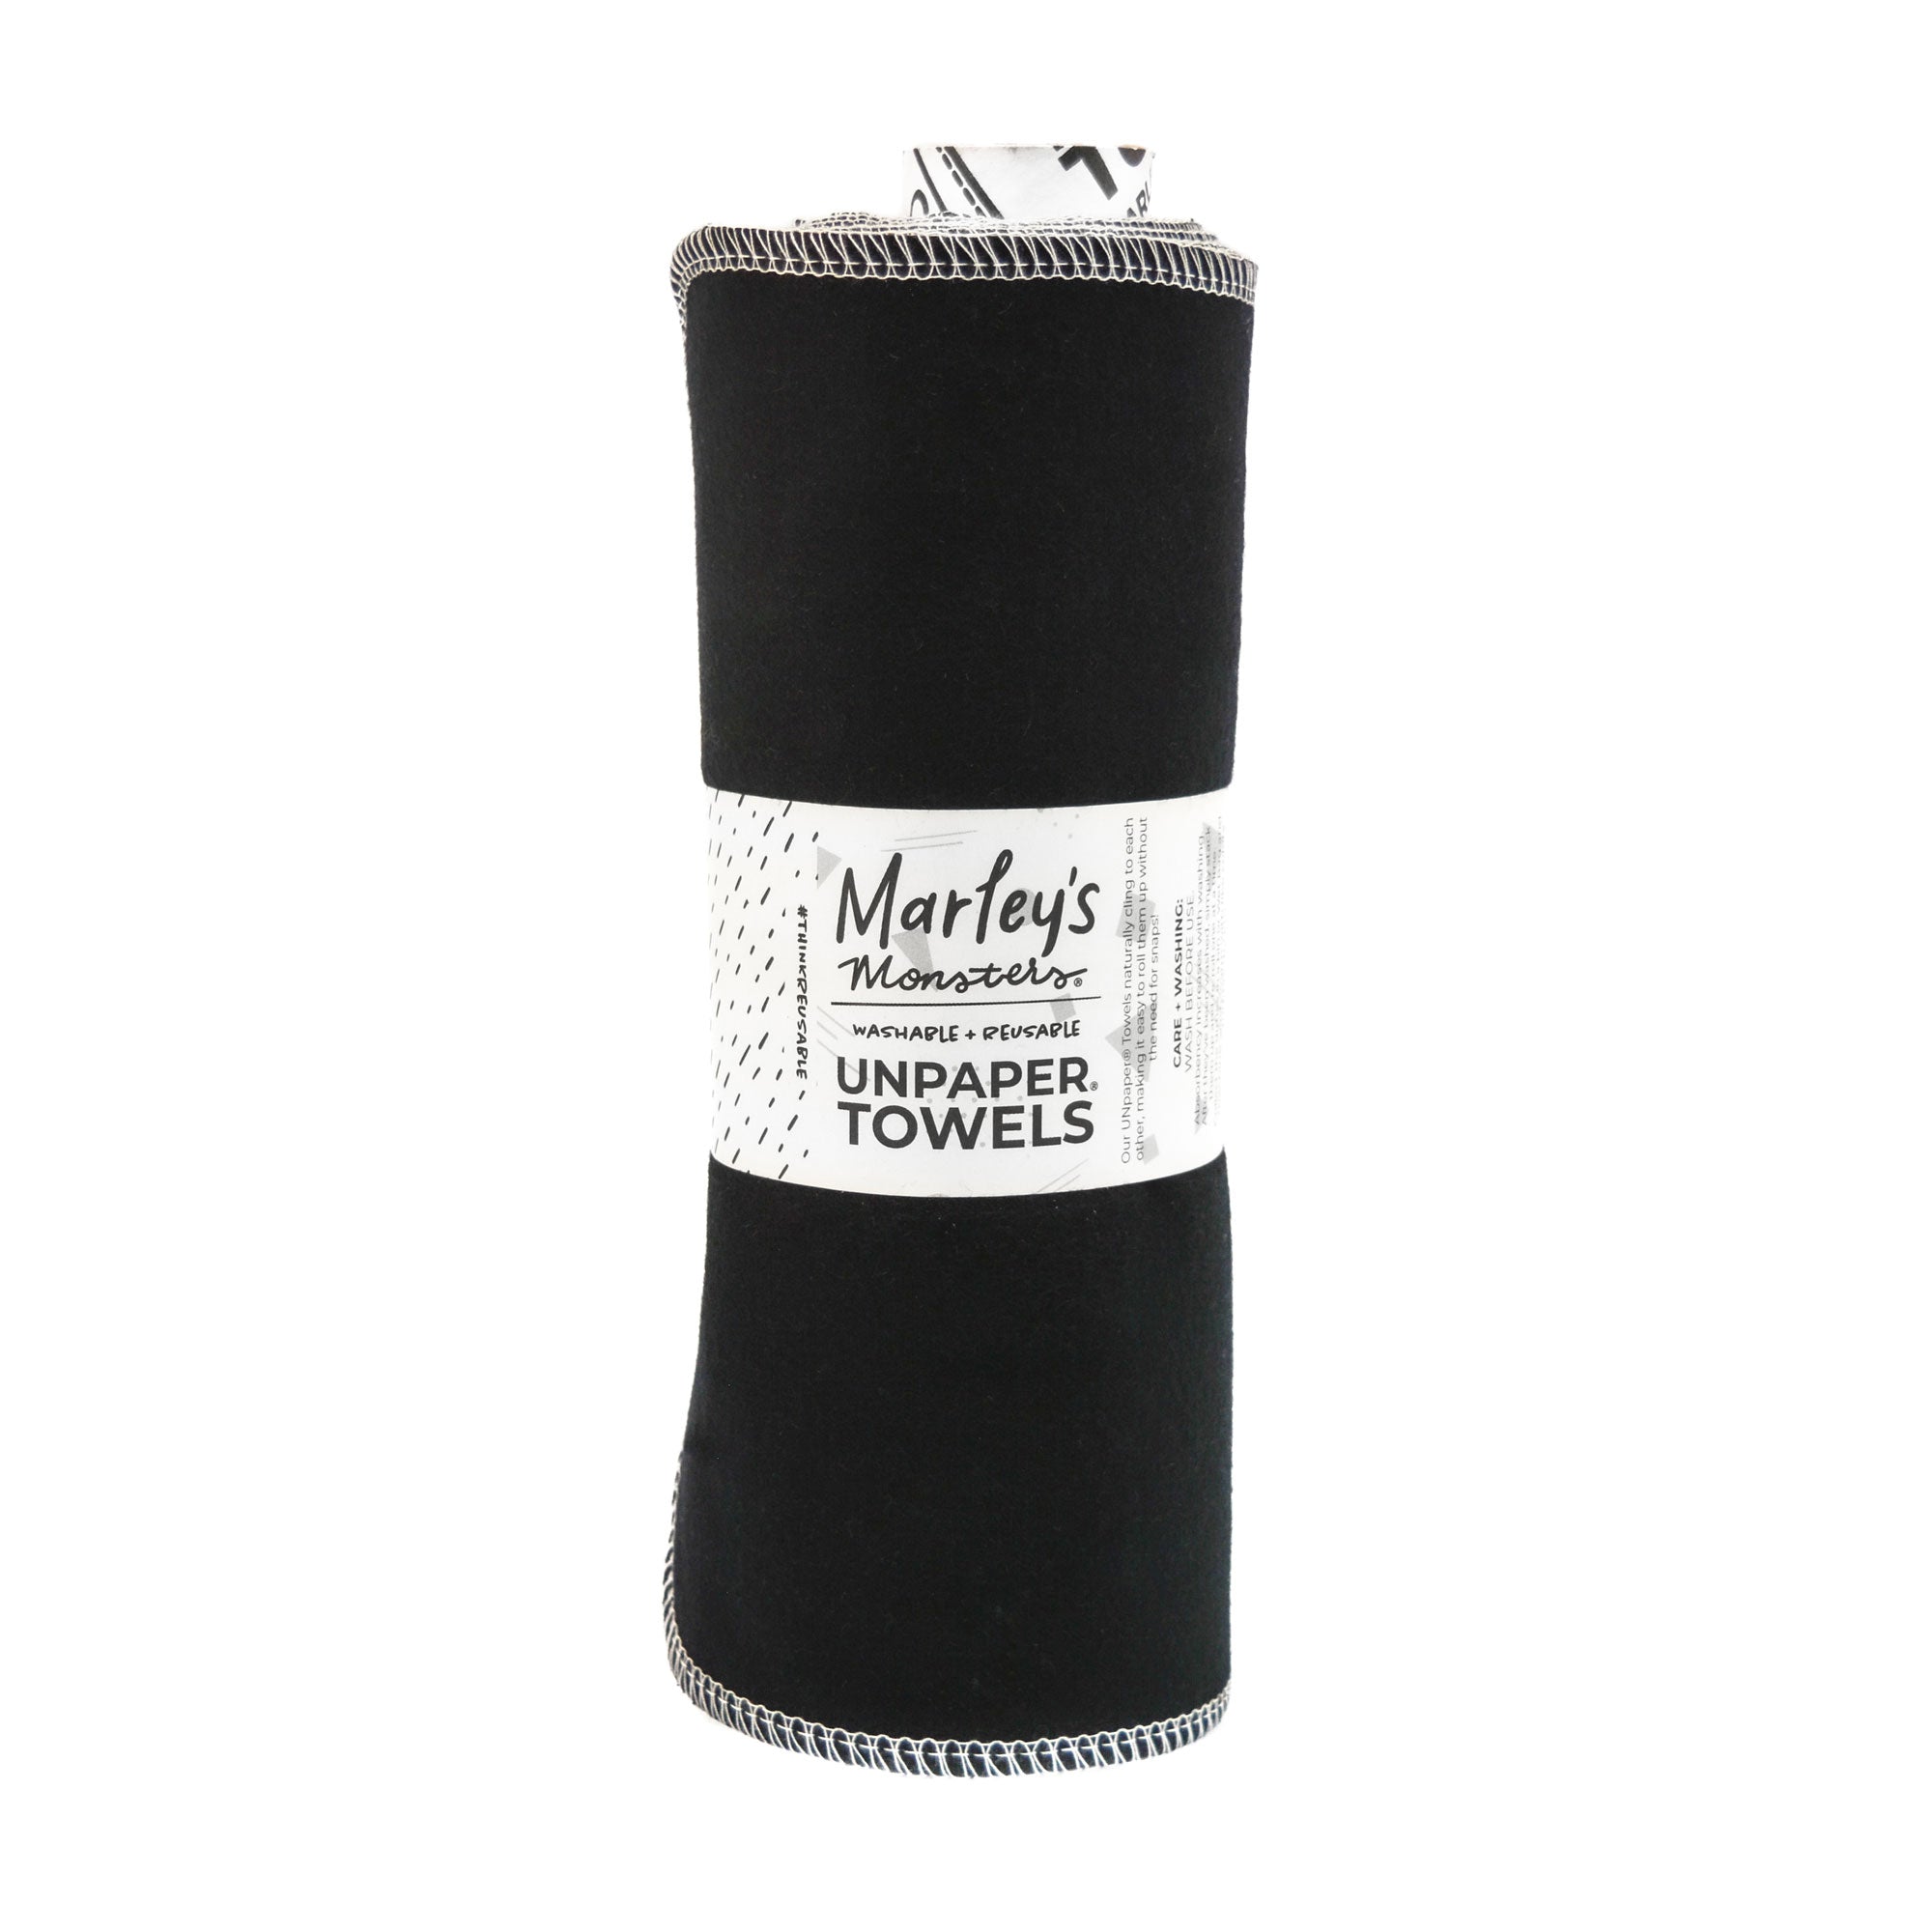 UNpaper® Towels: Color Mixes - Black - Marley's Monsters cotton flannel reusable paper towels